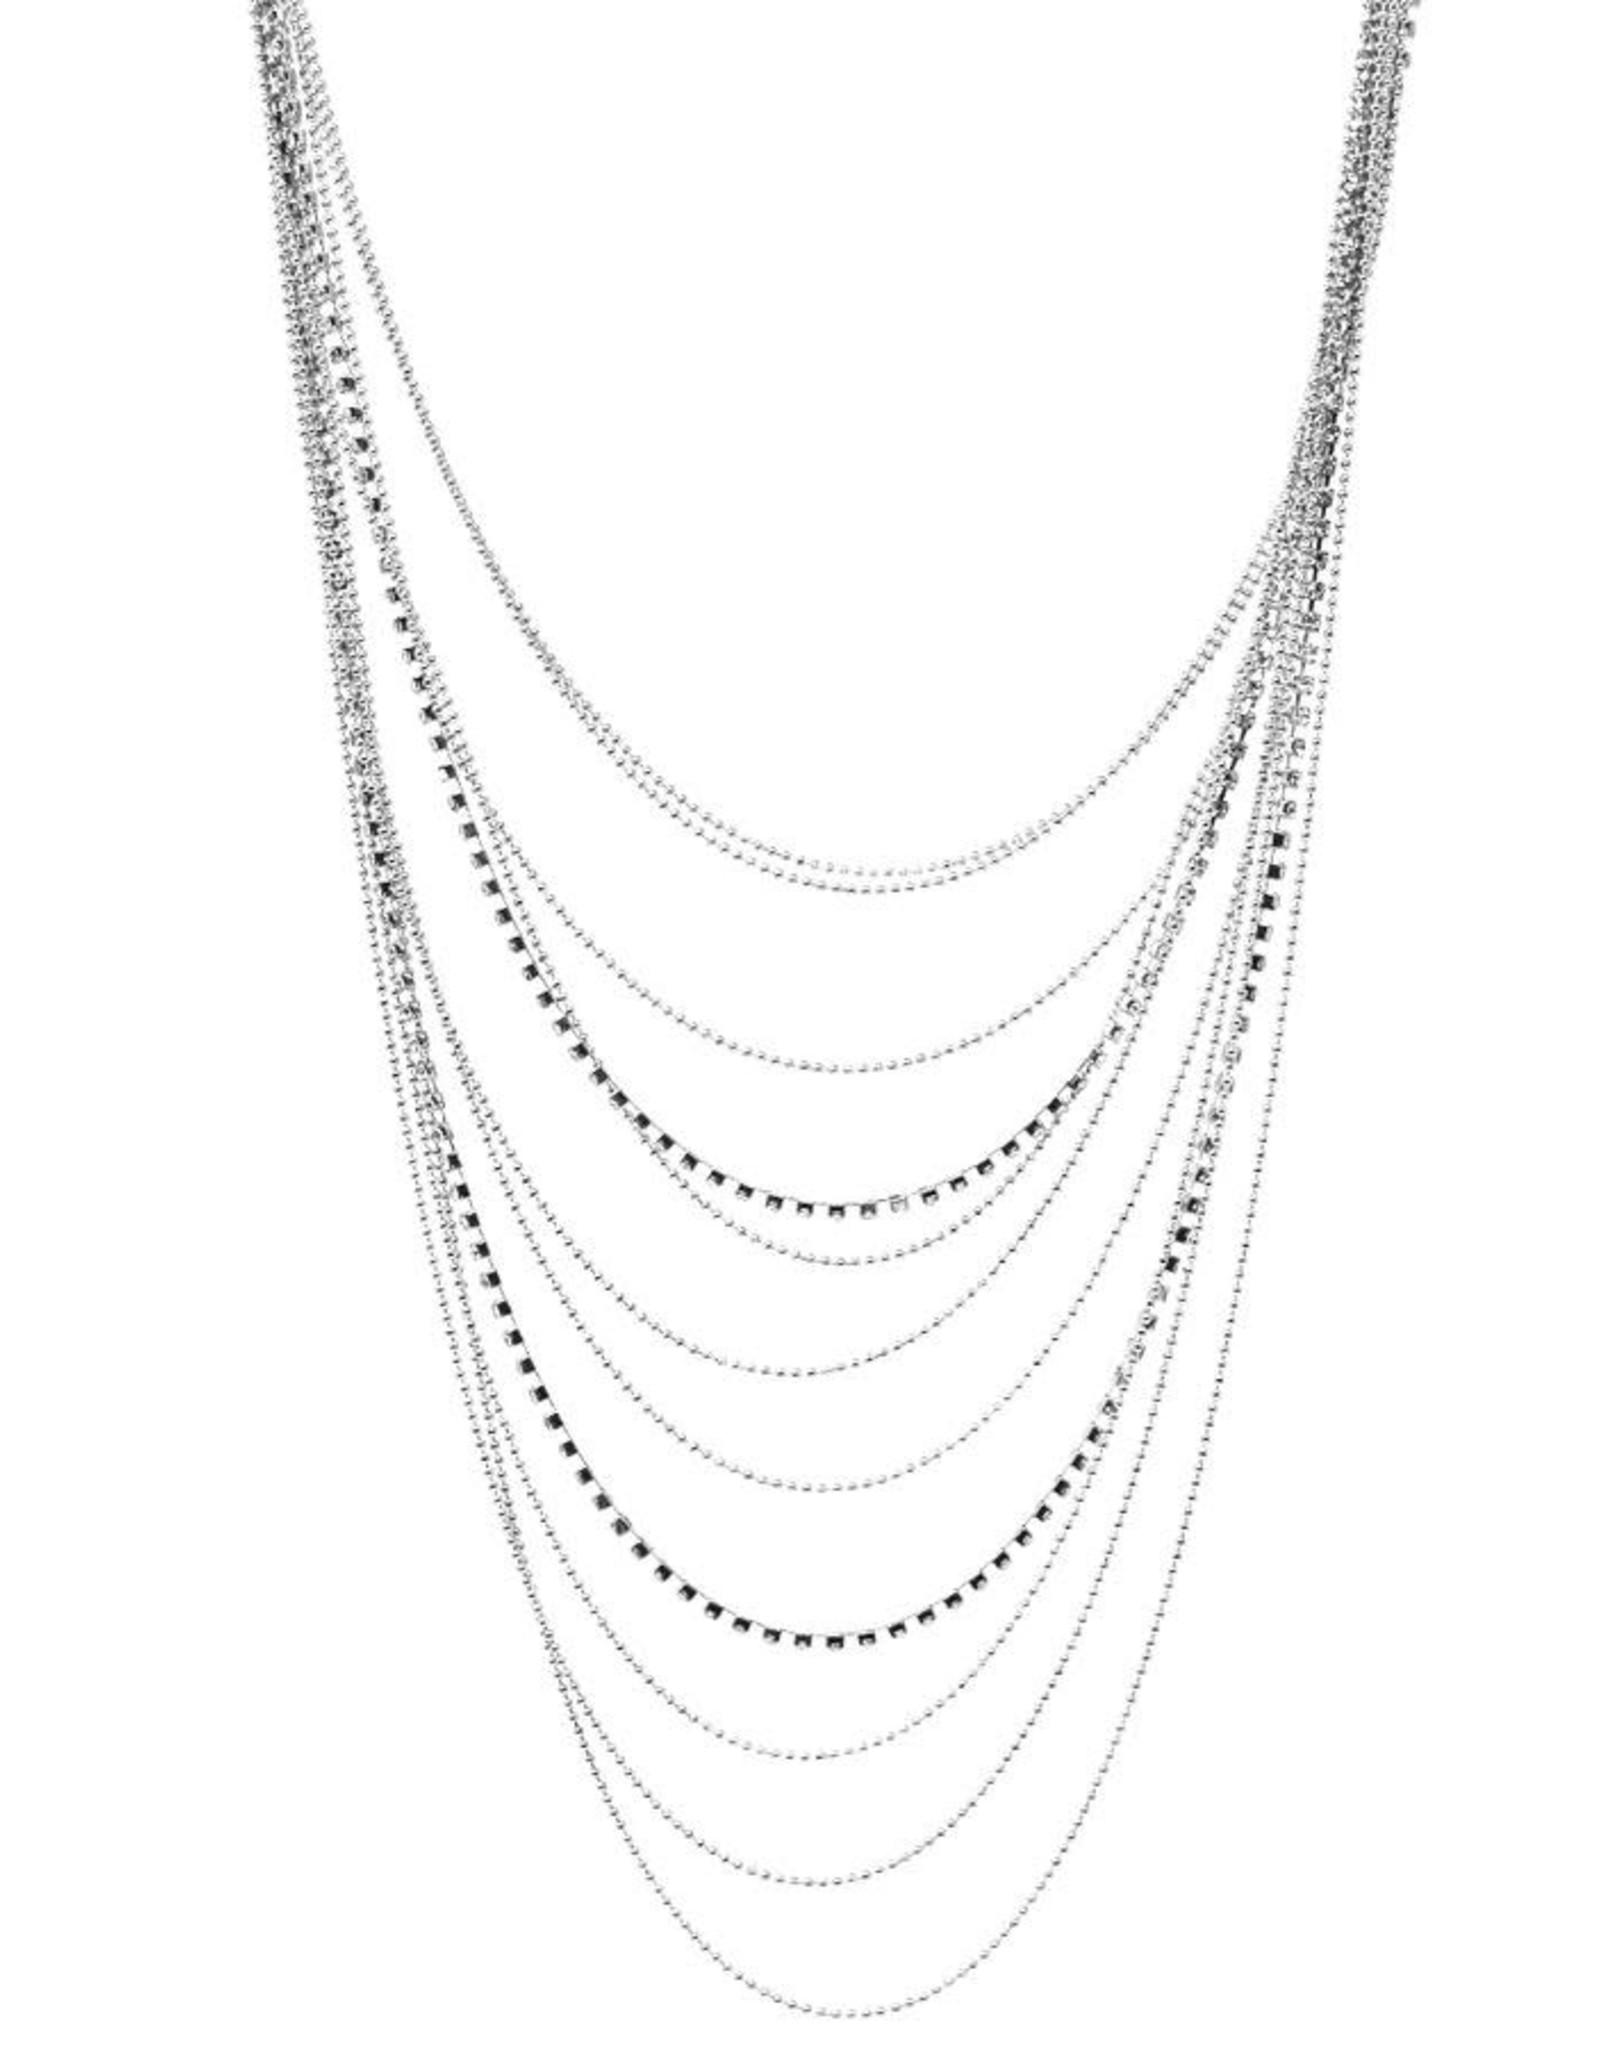 Rhinestone Ball Chain Multi Layered Necklace Set